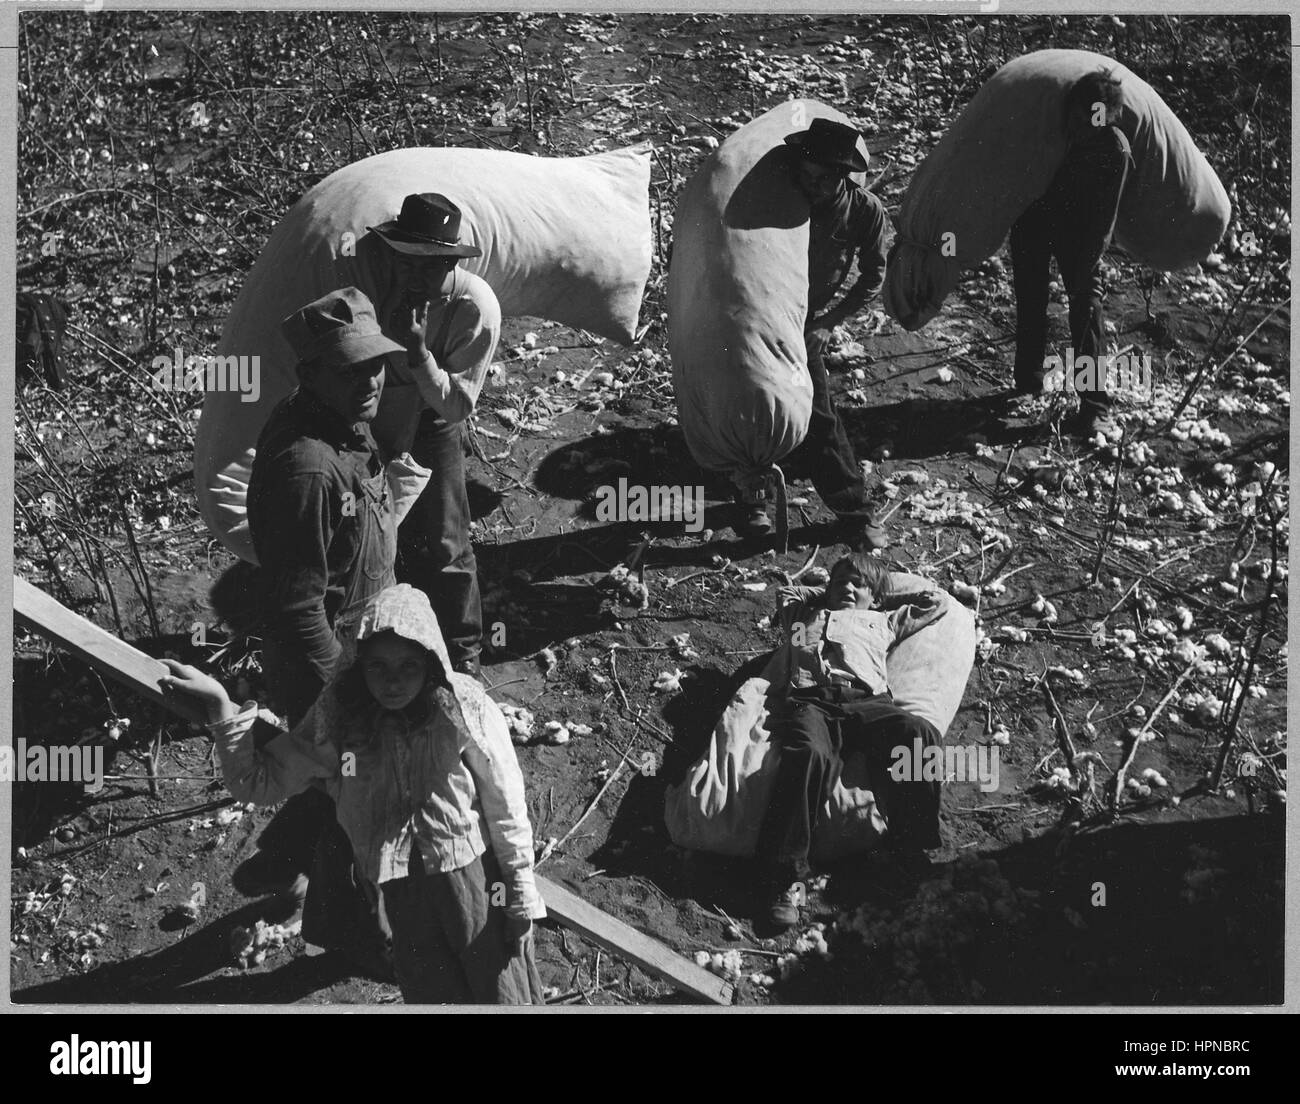 Fotografia di adulti e bambini che lavorano insieme mentre la raccolta di cotone, Maricopa County, Arizona, novembre 1940. Immagine cortesia Dorothea Lange/US National Archives. Foto Stock